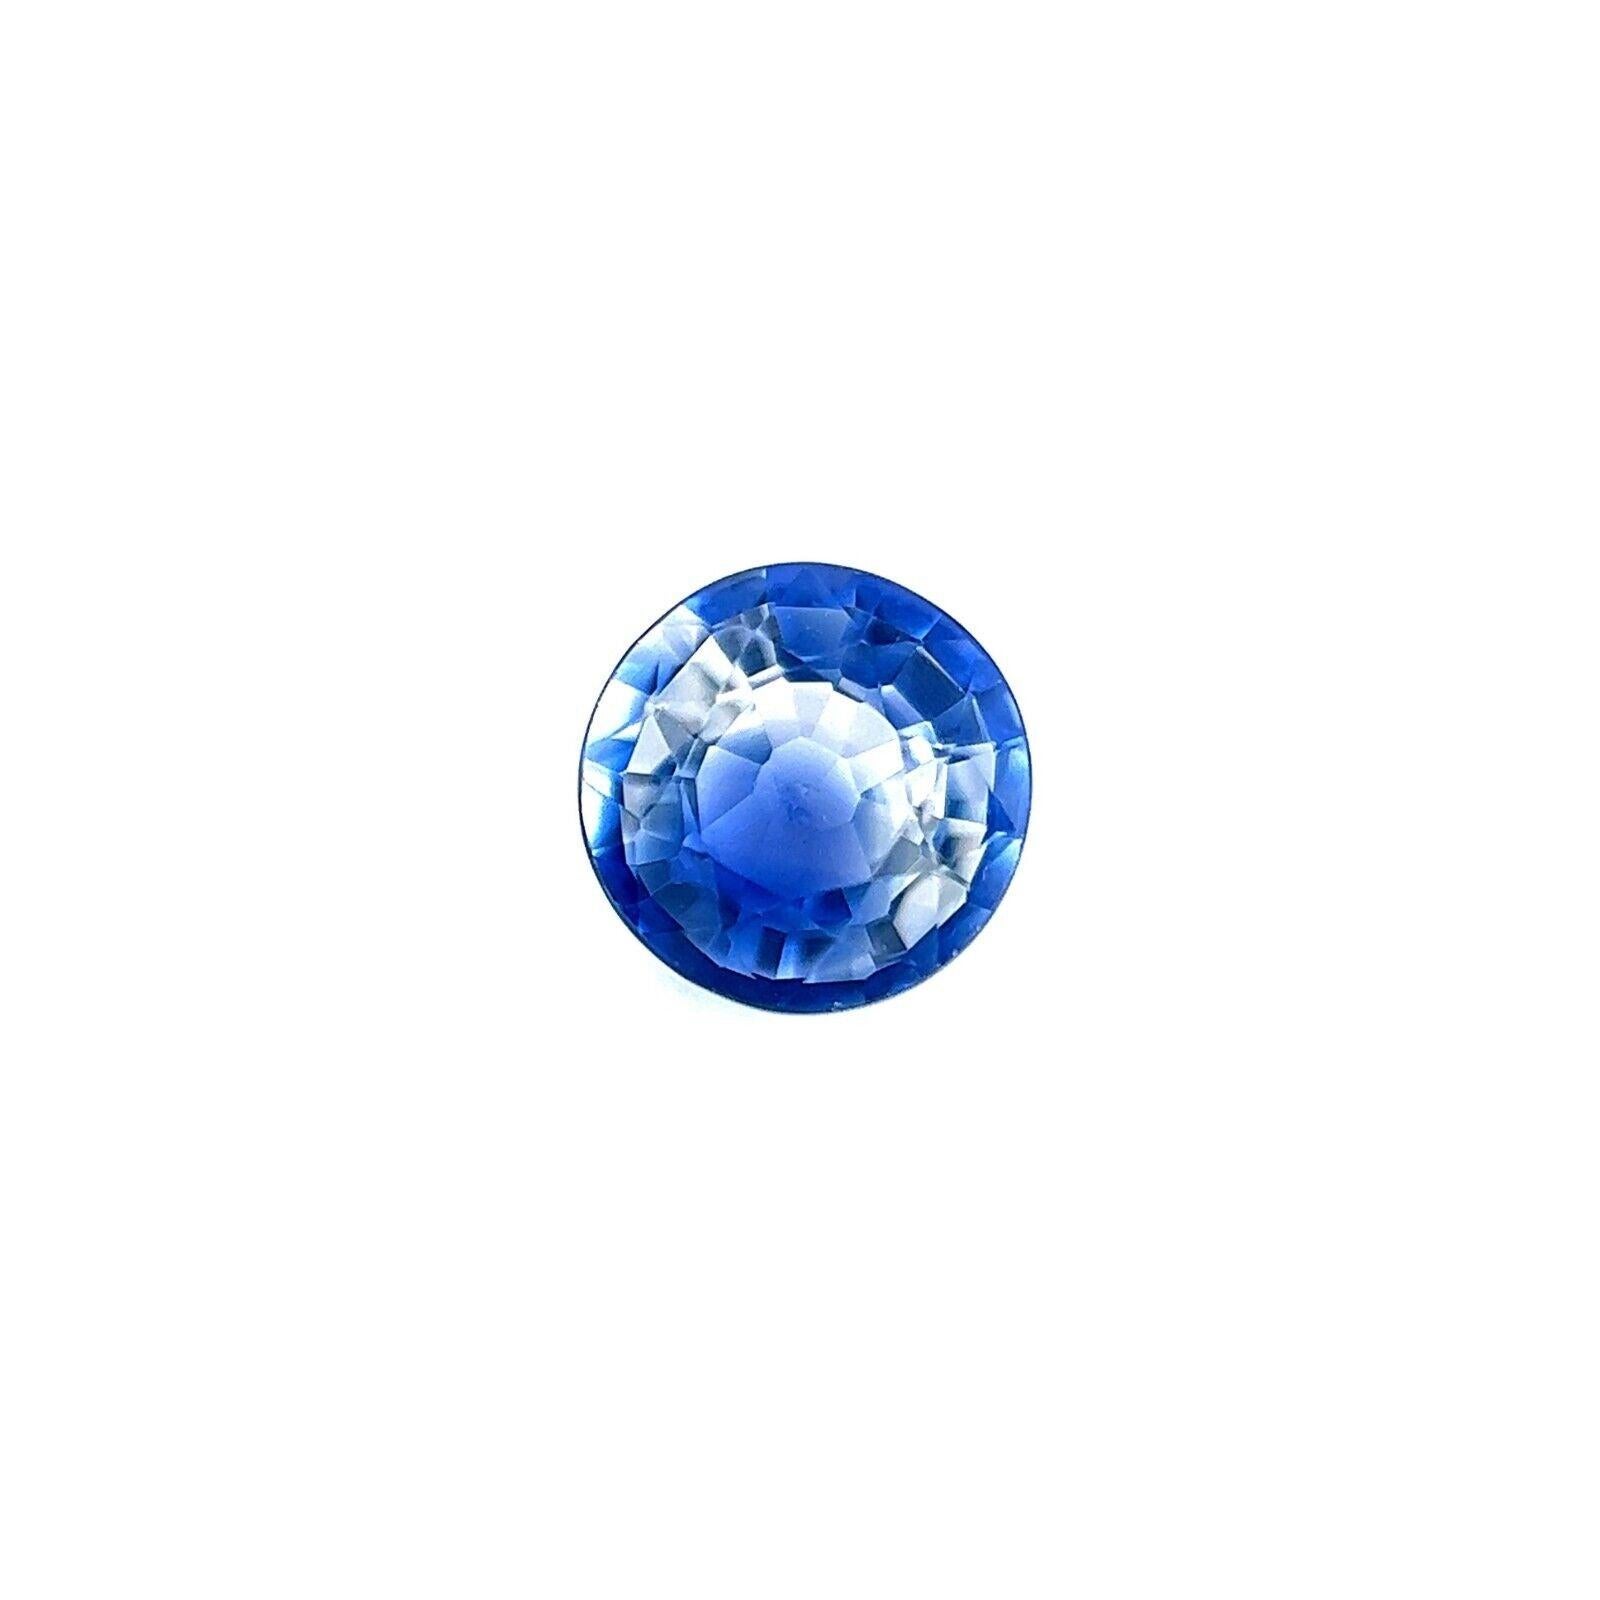 Bi Farbe Ceylon Saphir 0,68ct Blau Weiß Natürlich Rundschliff Seltener Edelstein 5,3mm VS

Einzigartiger natürlicher zweifarbiger blauer und weißer Ceylon-Saphir-Edelstein.
0,68 Karat mit einem schönen blau-weißen Bicolor-Effekt und sehr guter